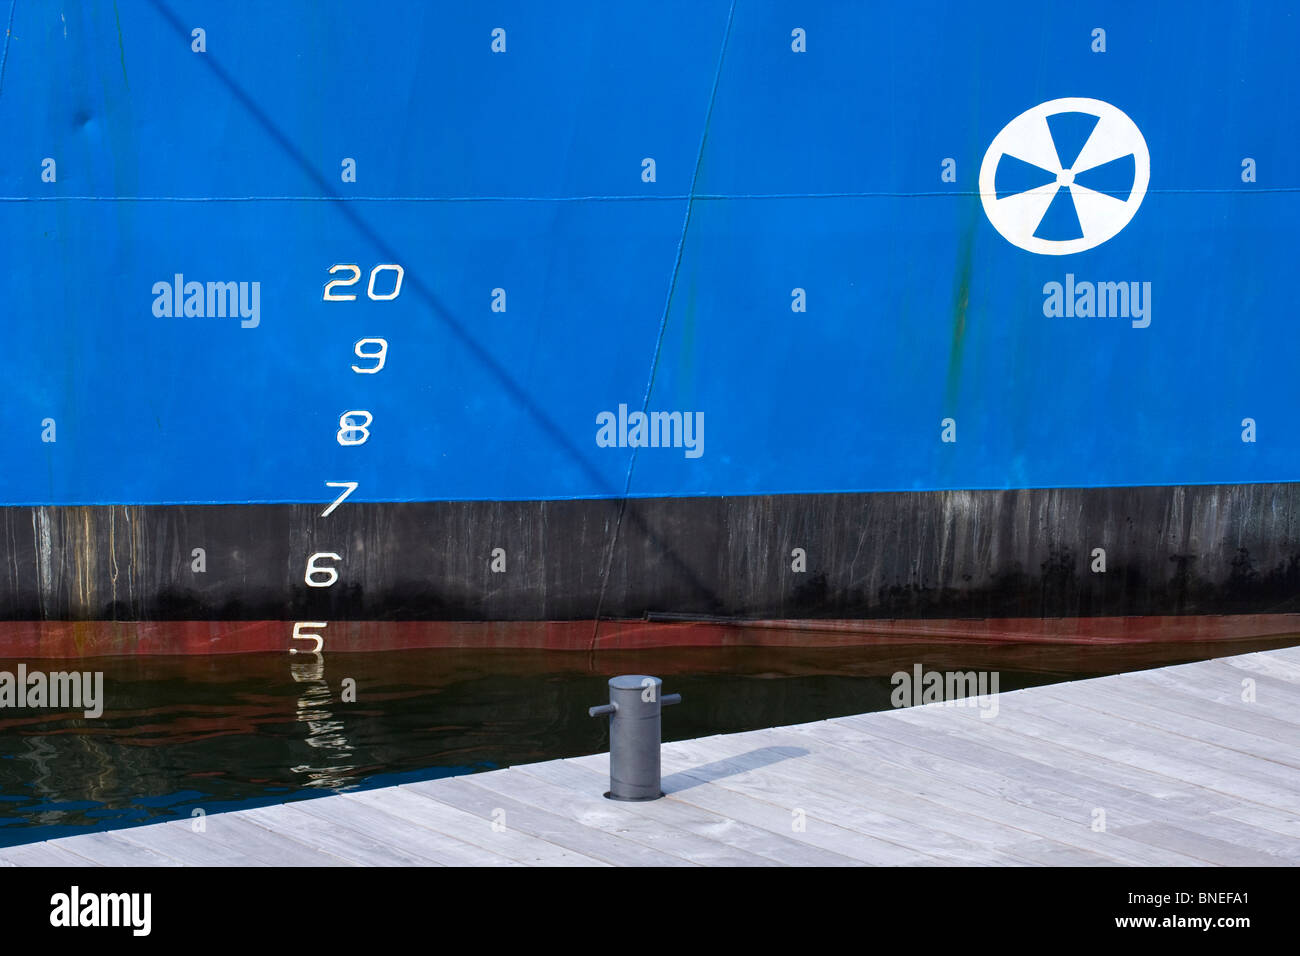 El casco de acero del Barco Azul en agua, con proyecto de nomenclaturas y Pier abrazadera de muelle. Foto de stock